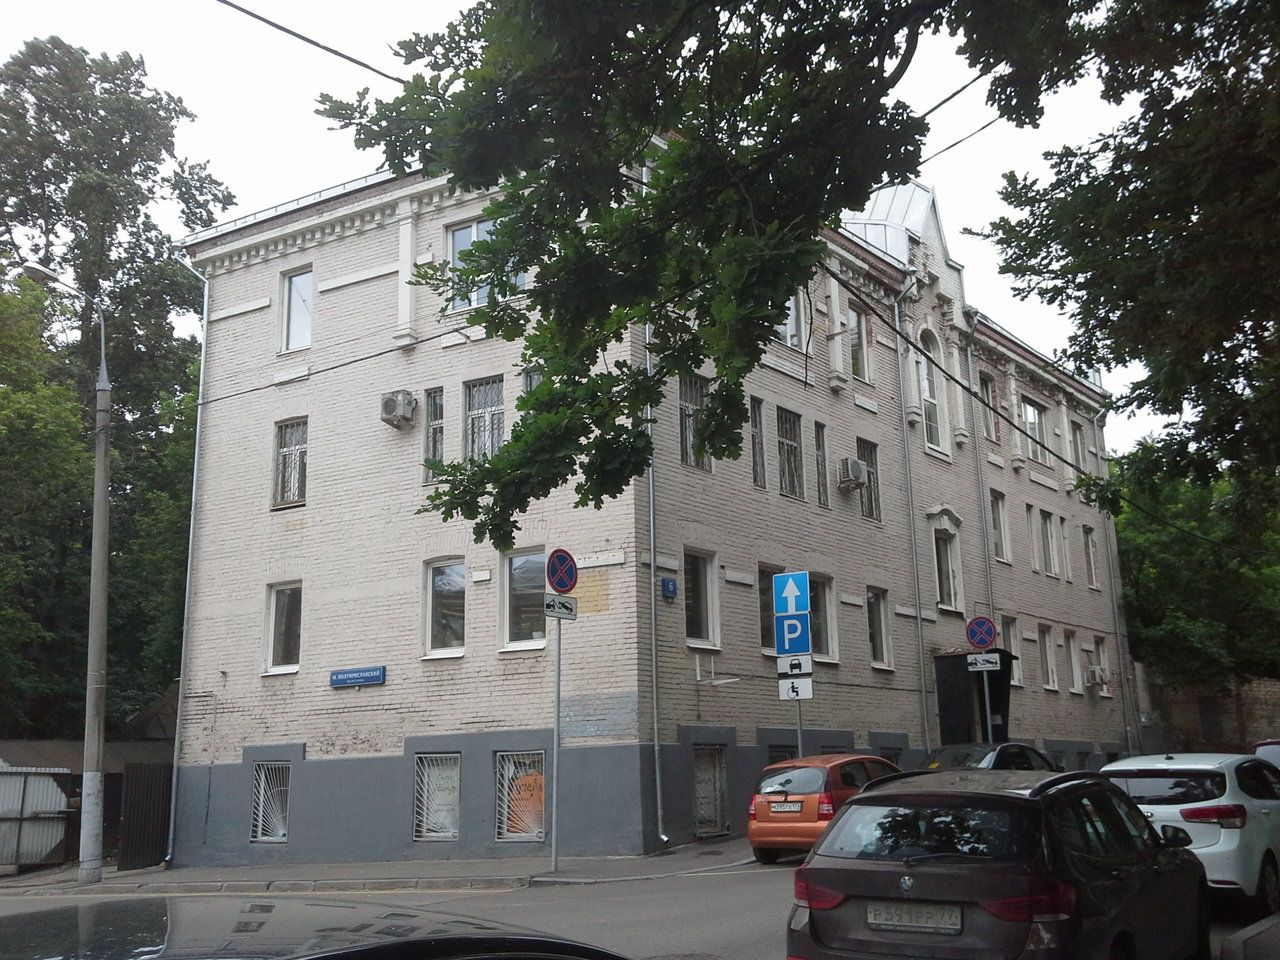 Бизнес Центр в Мельницком переулке, 6с1